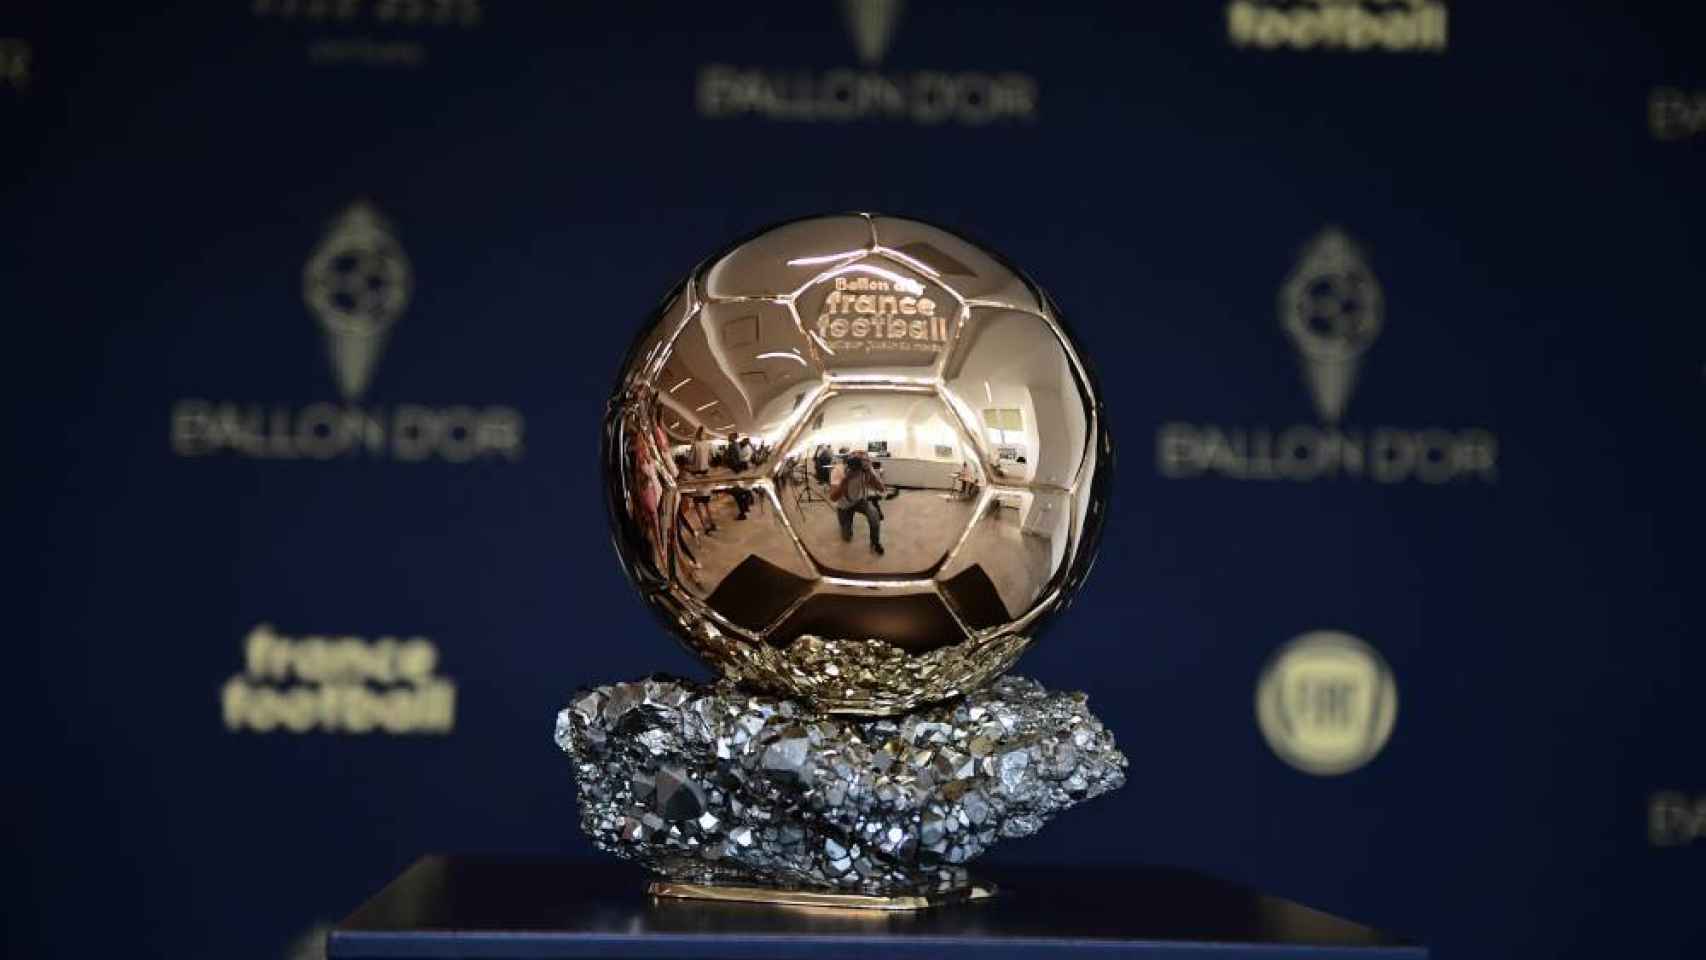 Trofeo Fútbol balón dorado